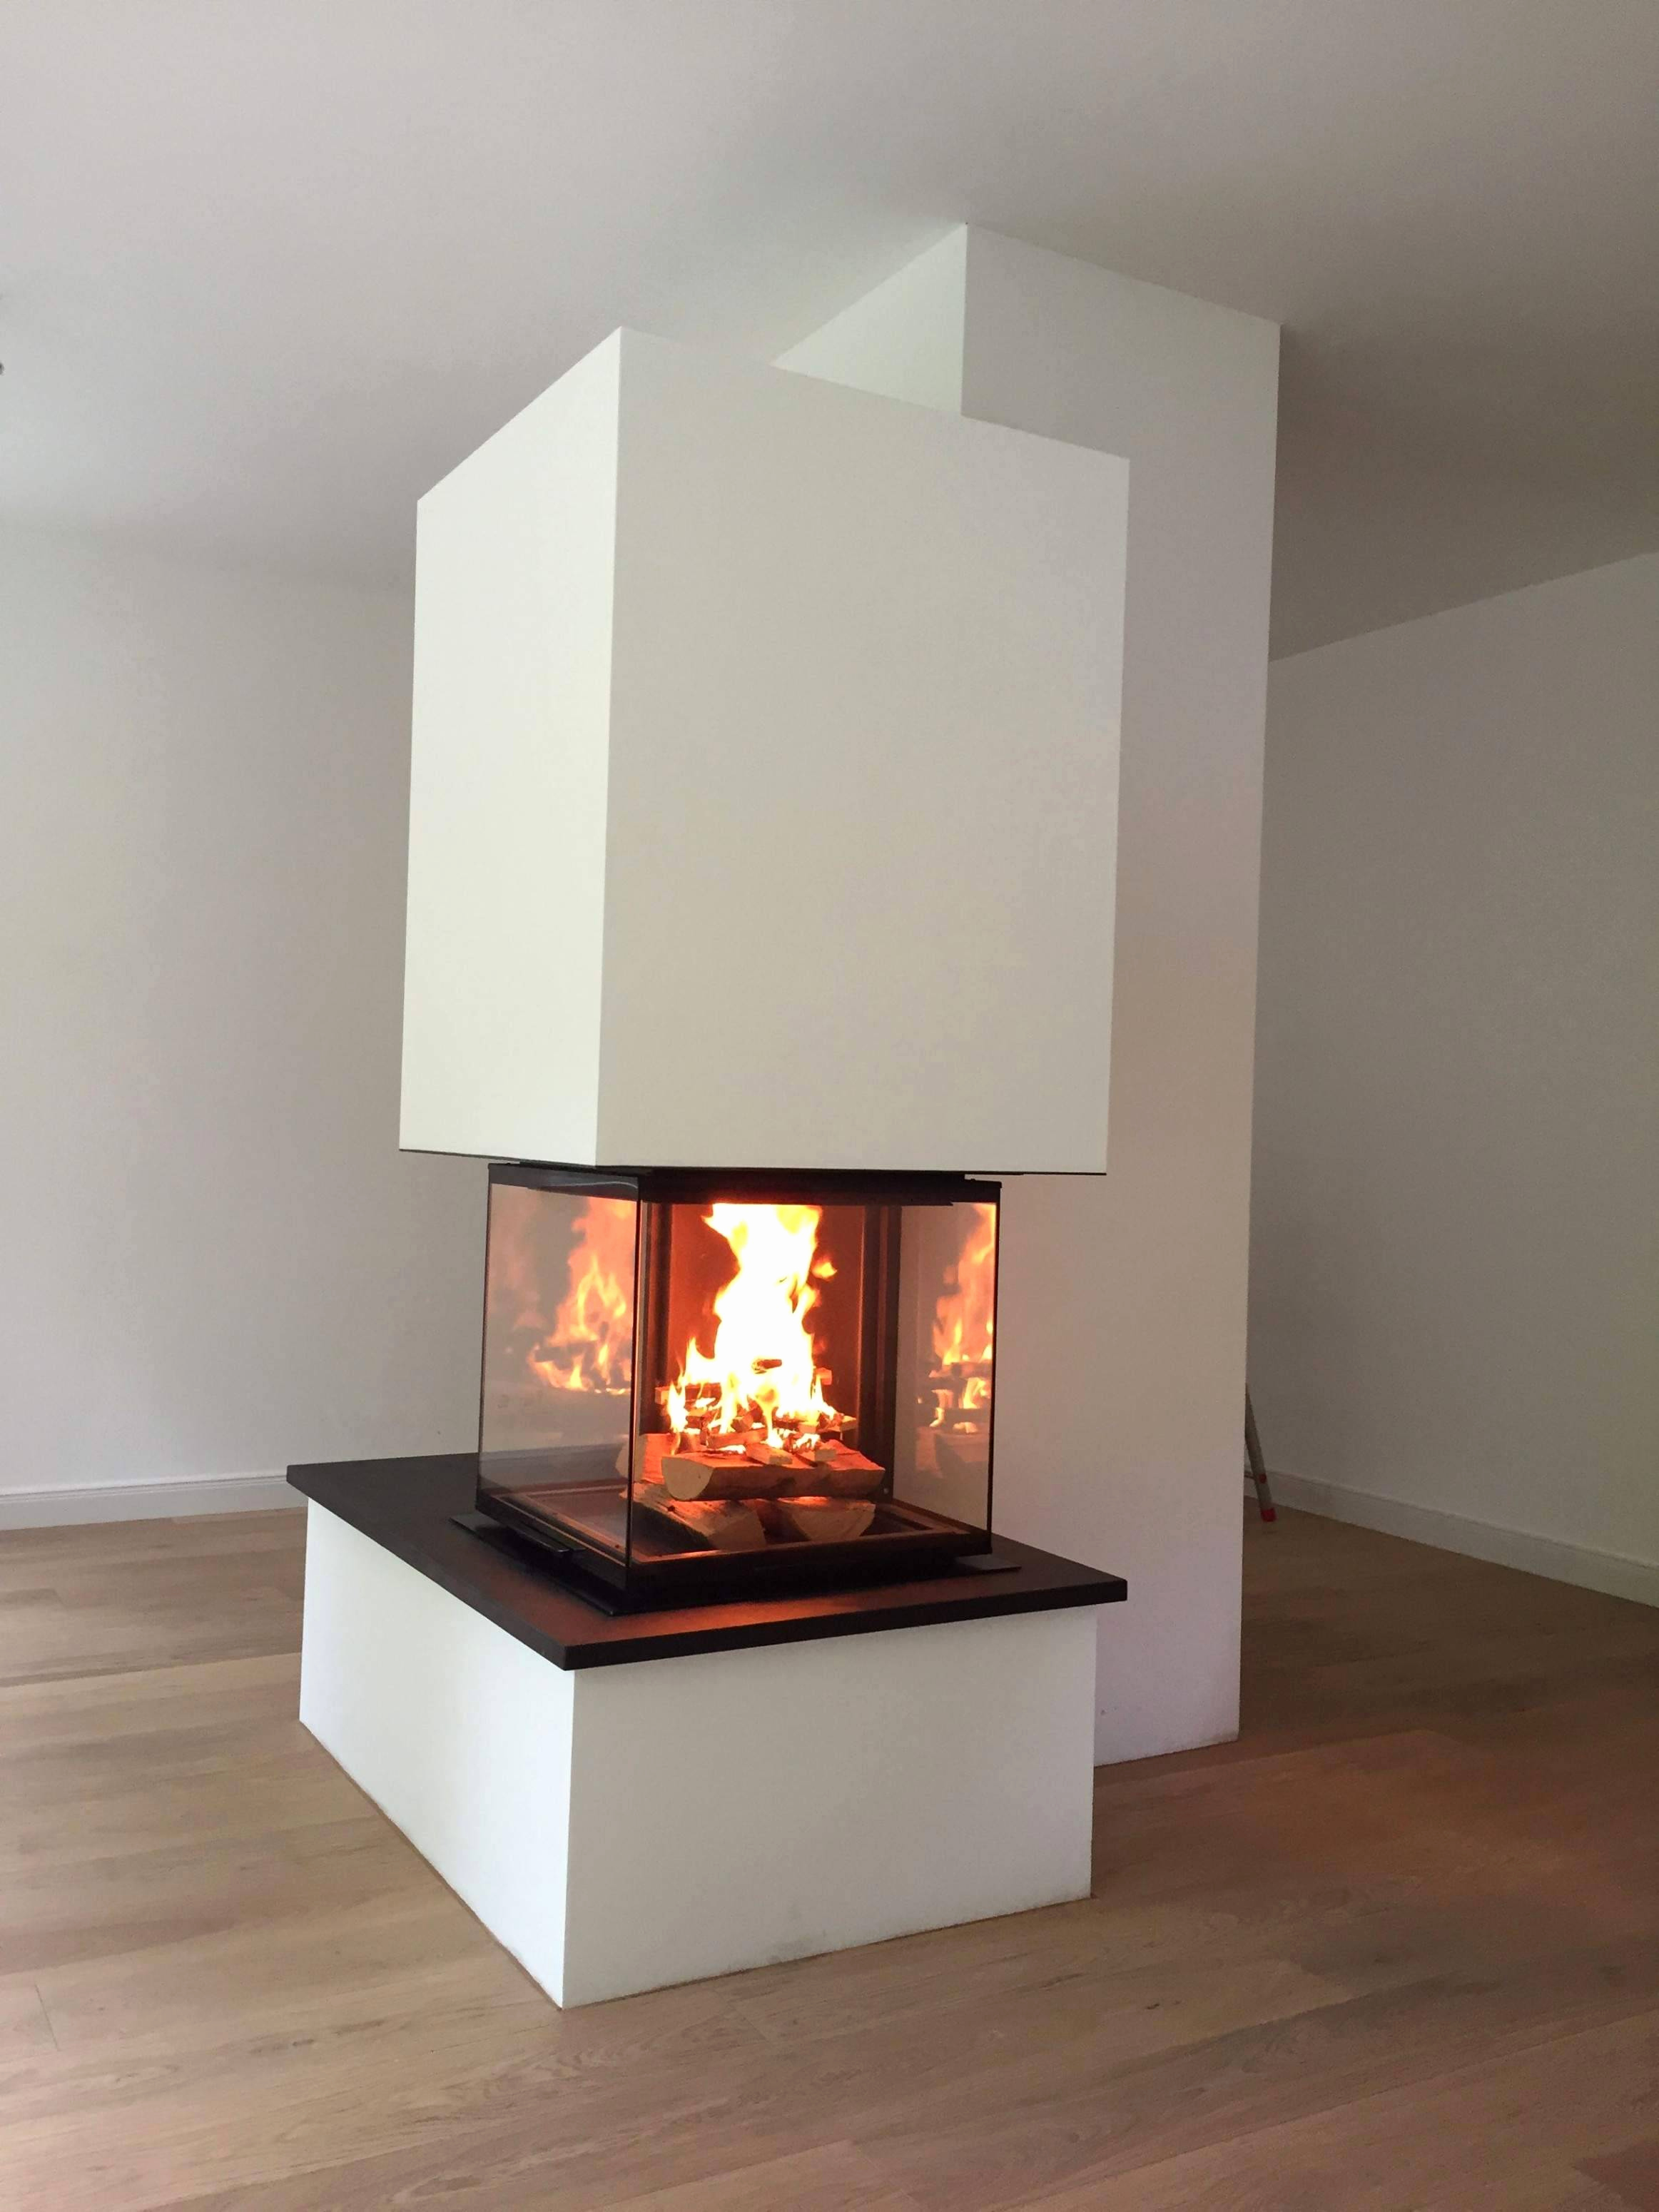 Fireplace Designs 2018 Awesome Speicherkaminofen Das Beste Von Kaminofen Mit Speicher